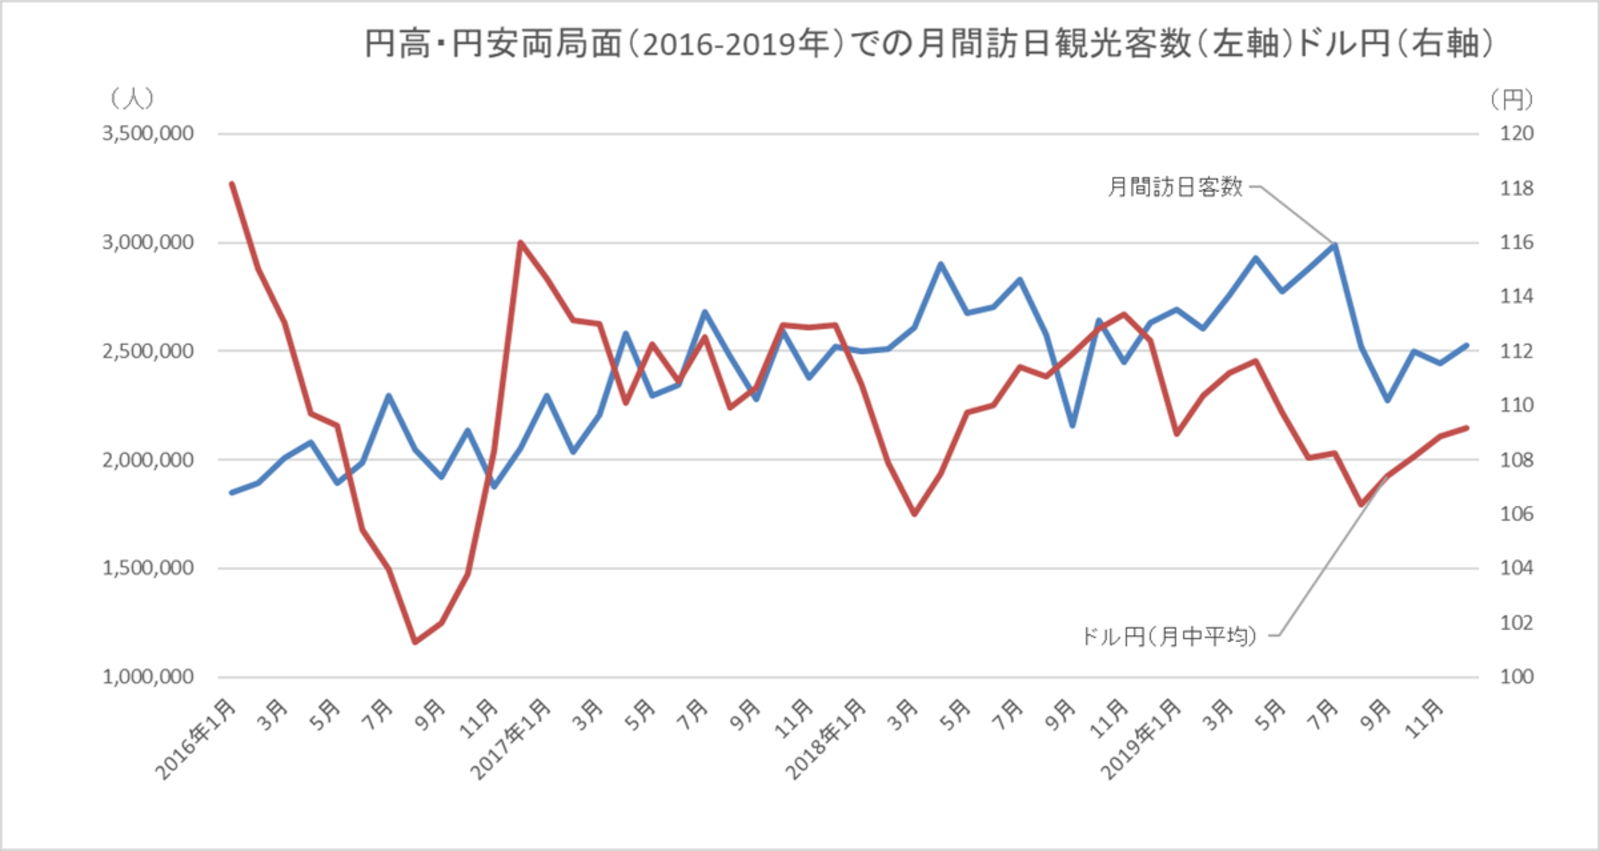 円高・円安局面での月間訪日観光客数とドル円